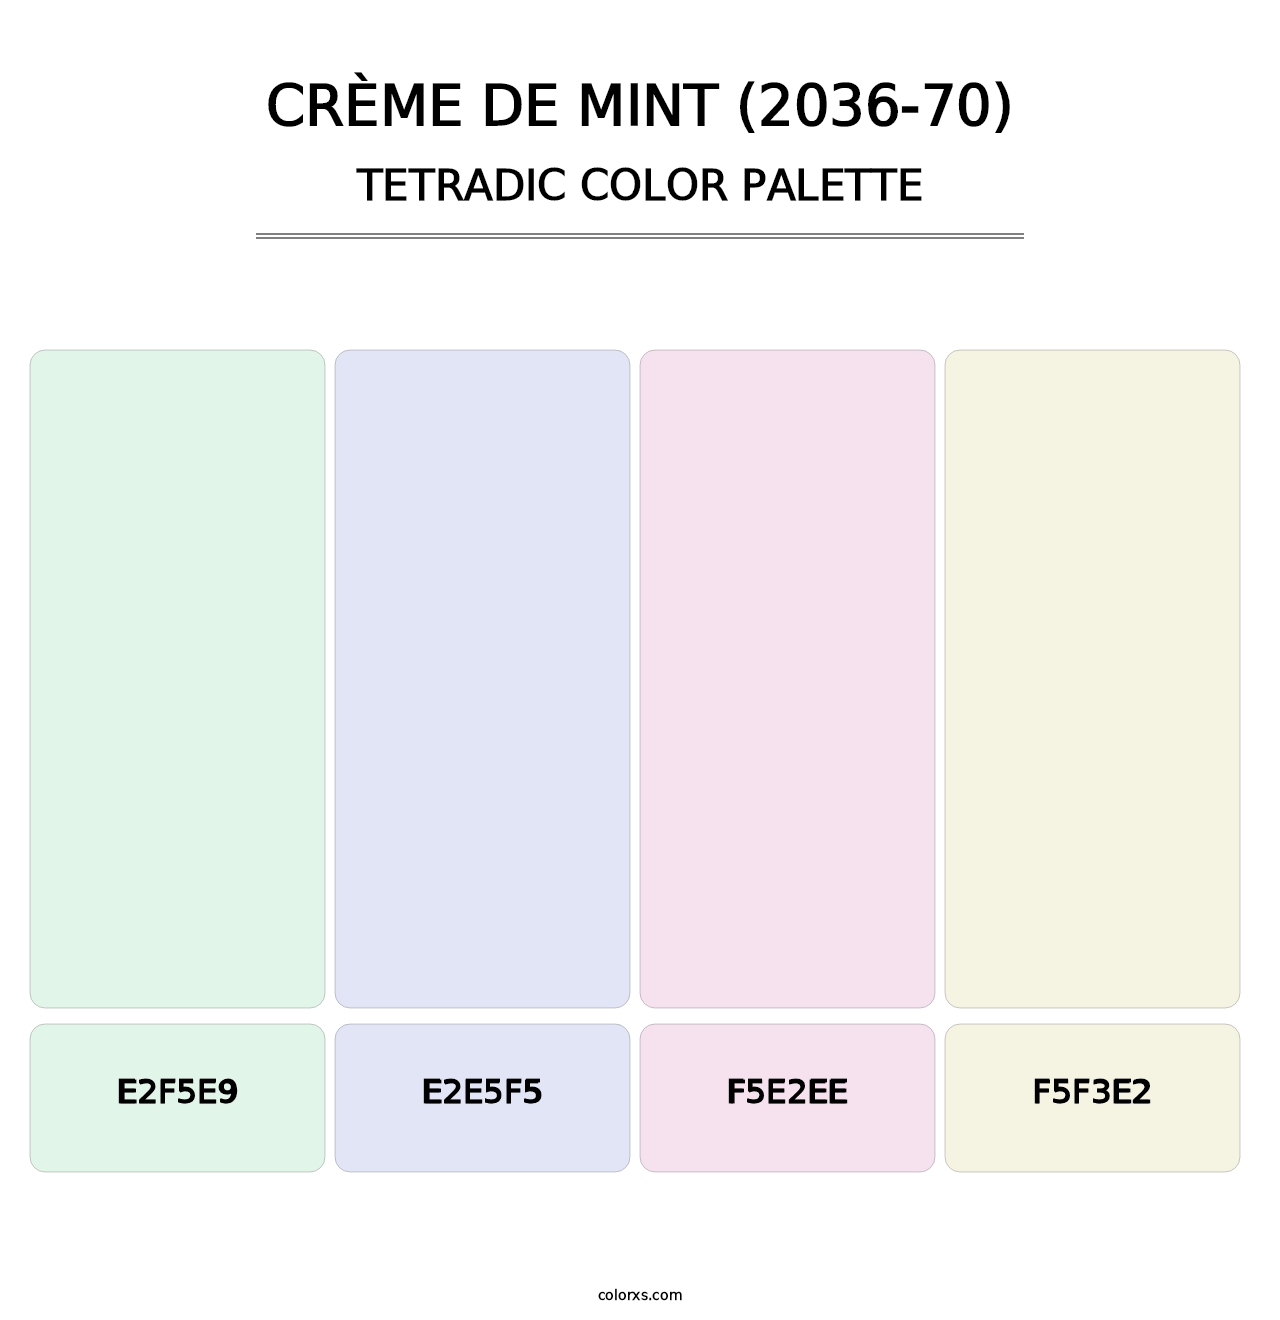 Crème de Mint (2036-70) - Tetradic Color Palette